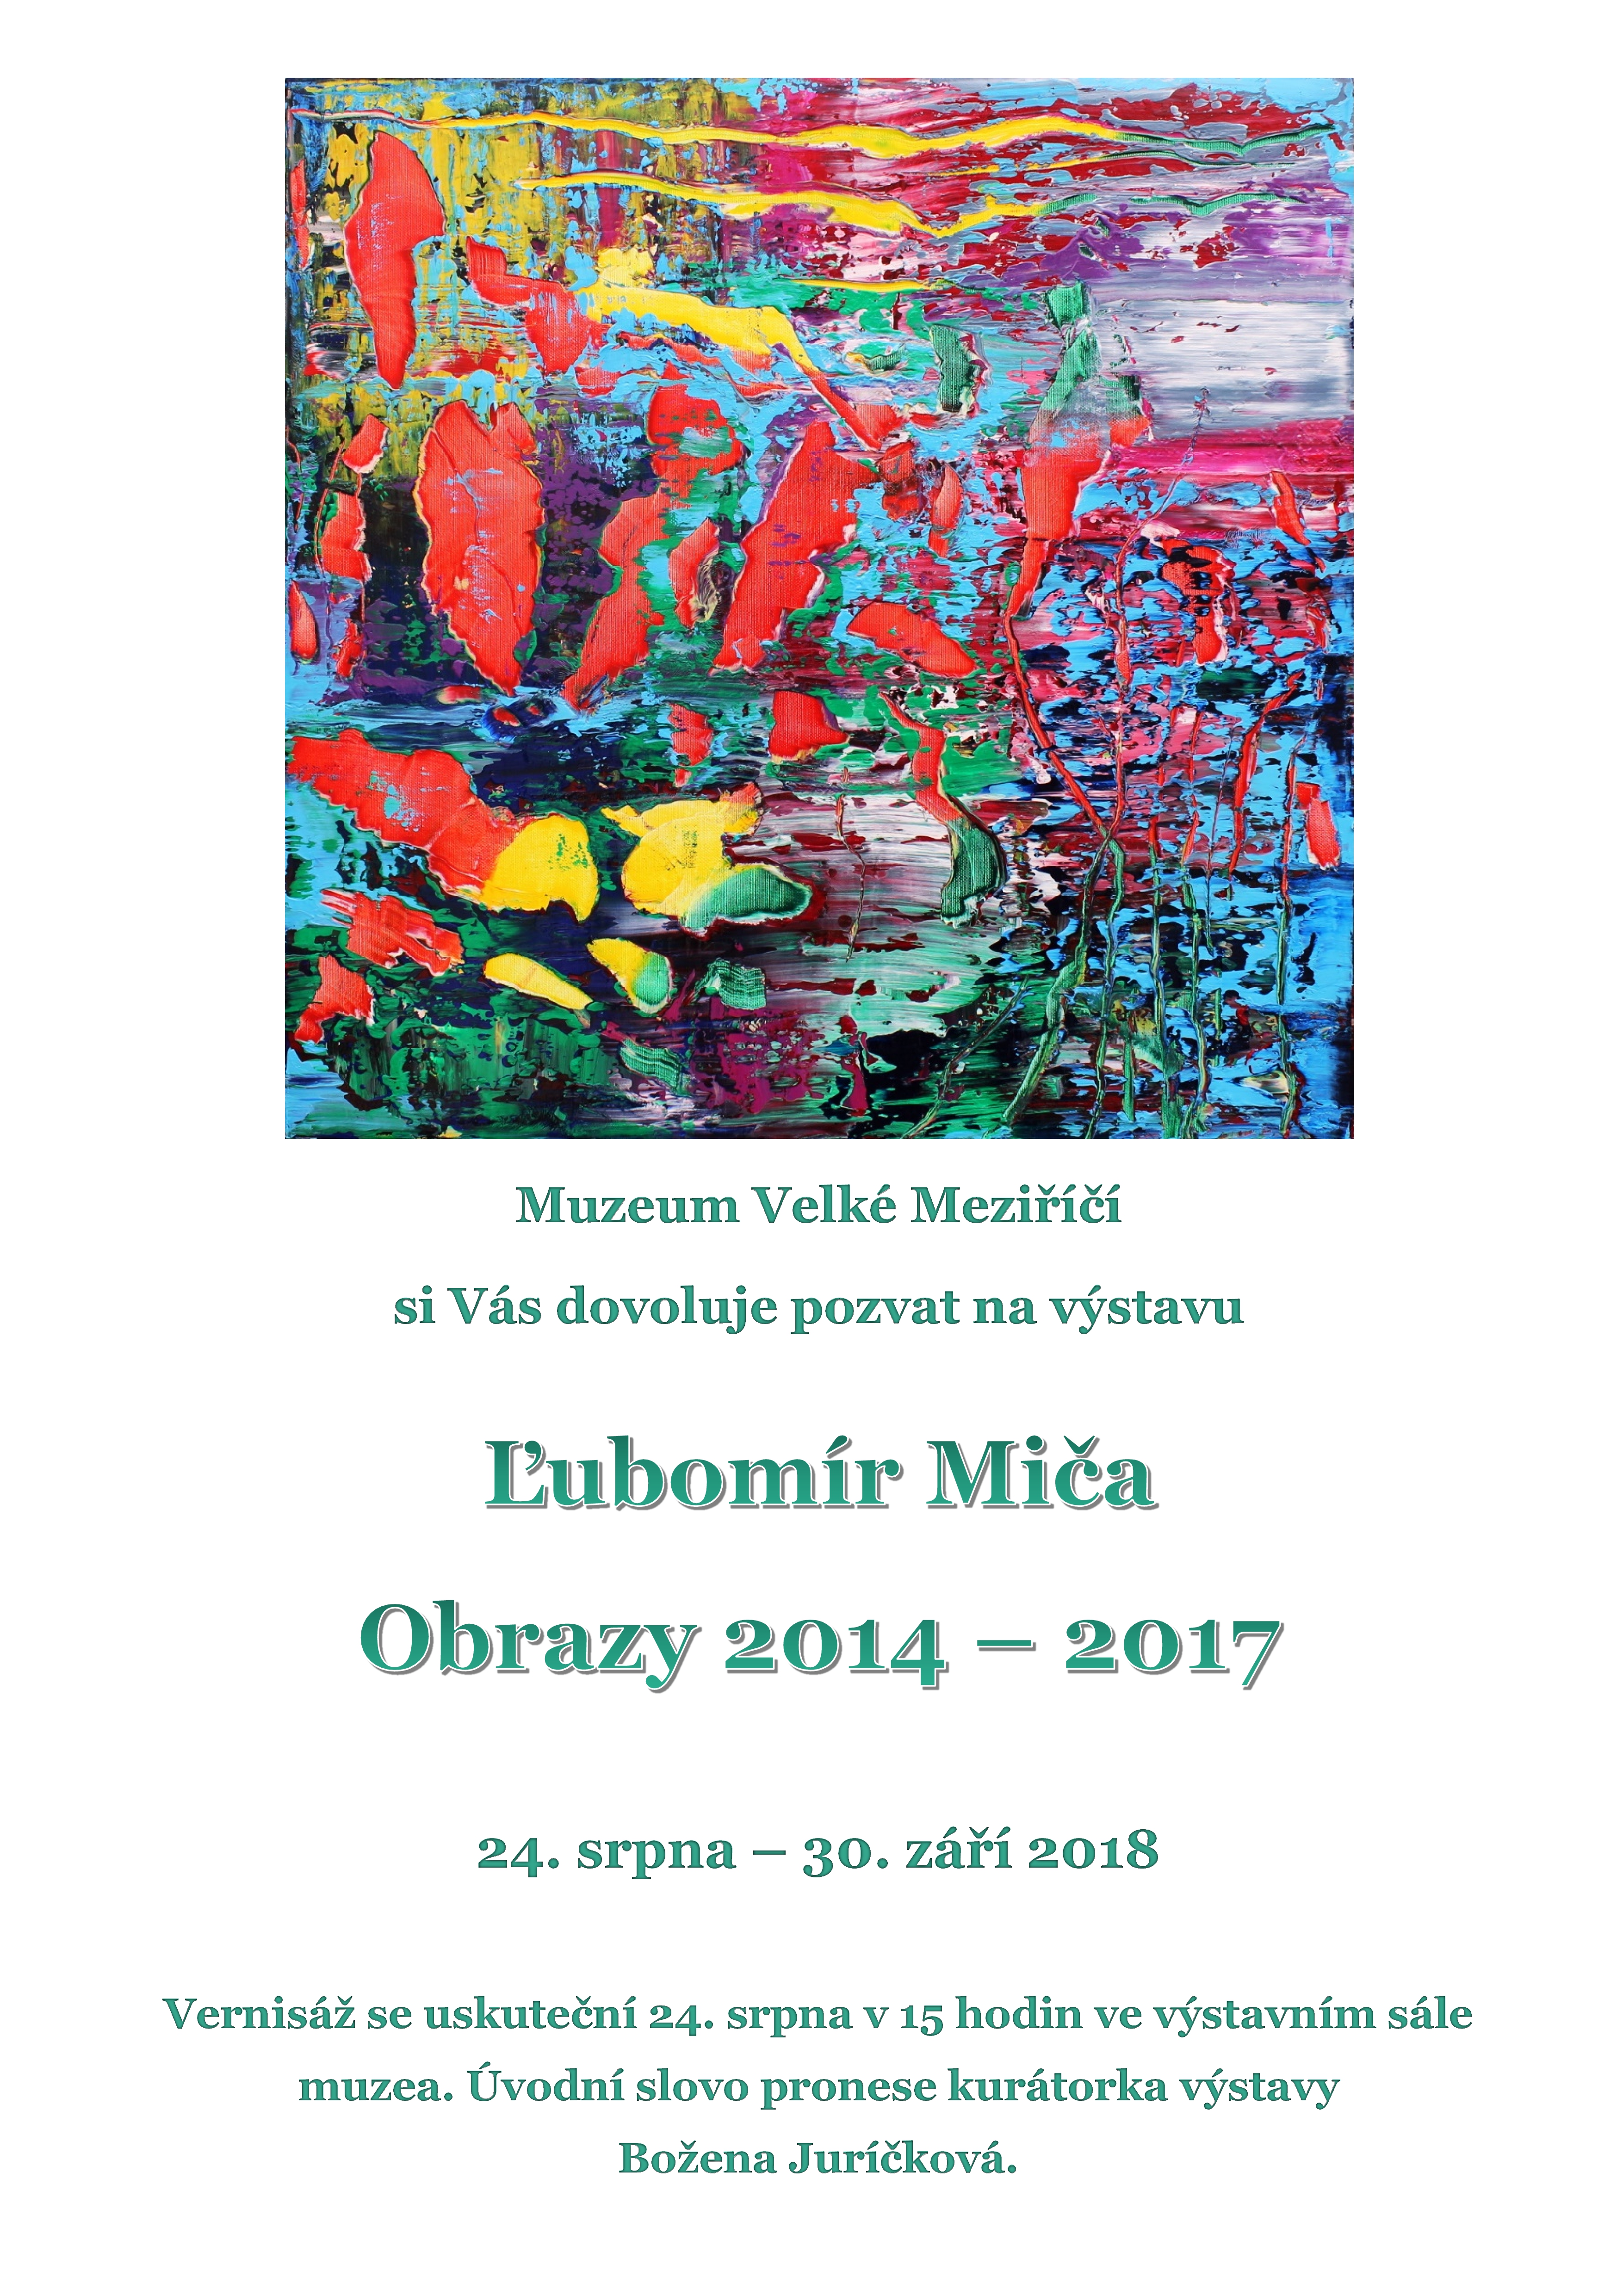 Muzeum představí slovenského výtvarníka Ľubomíra Miču